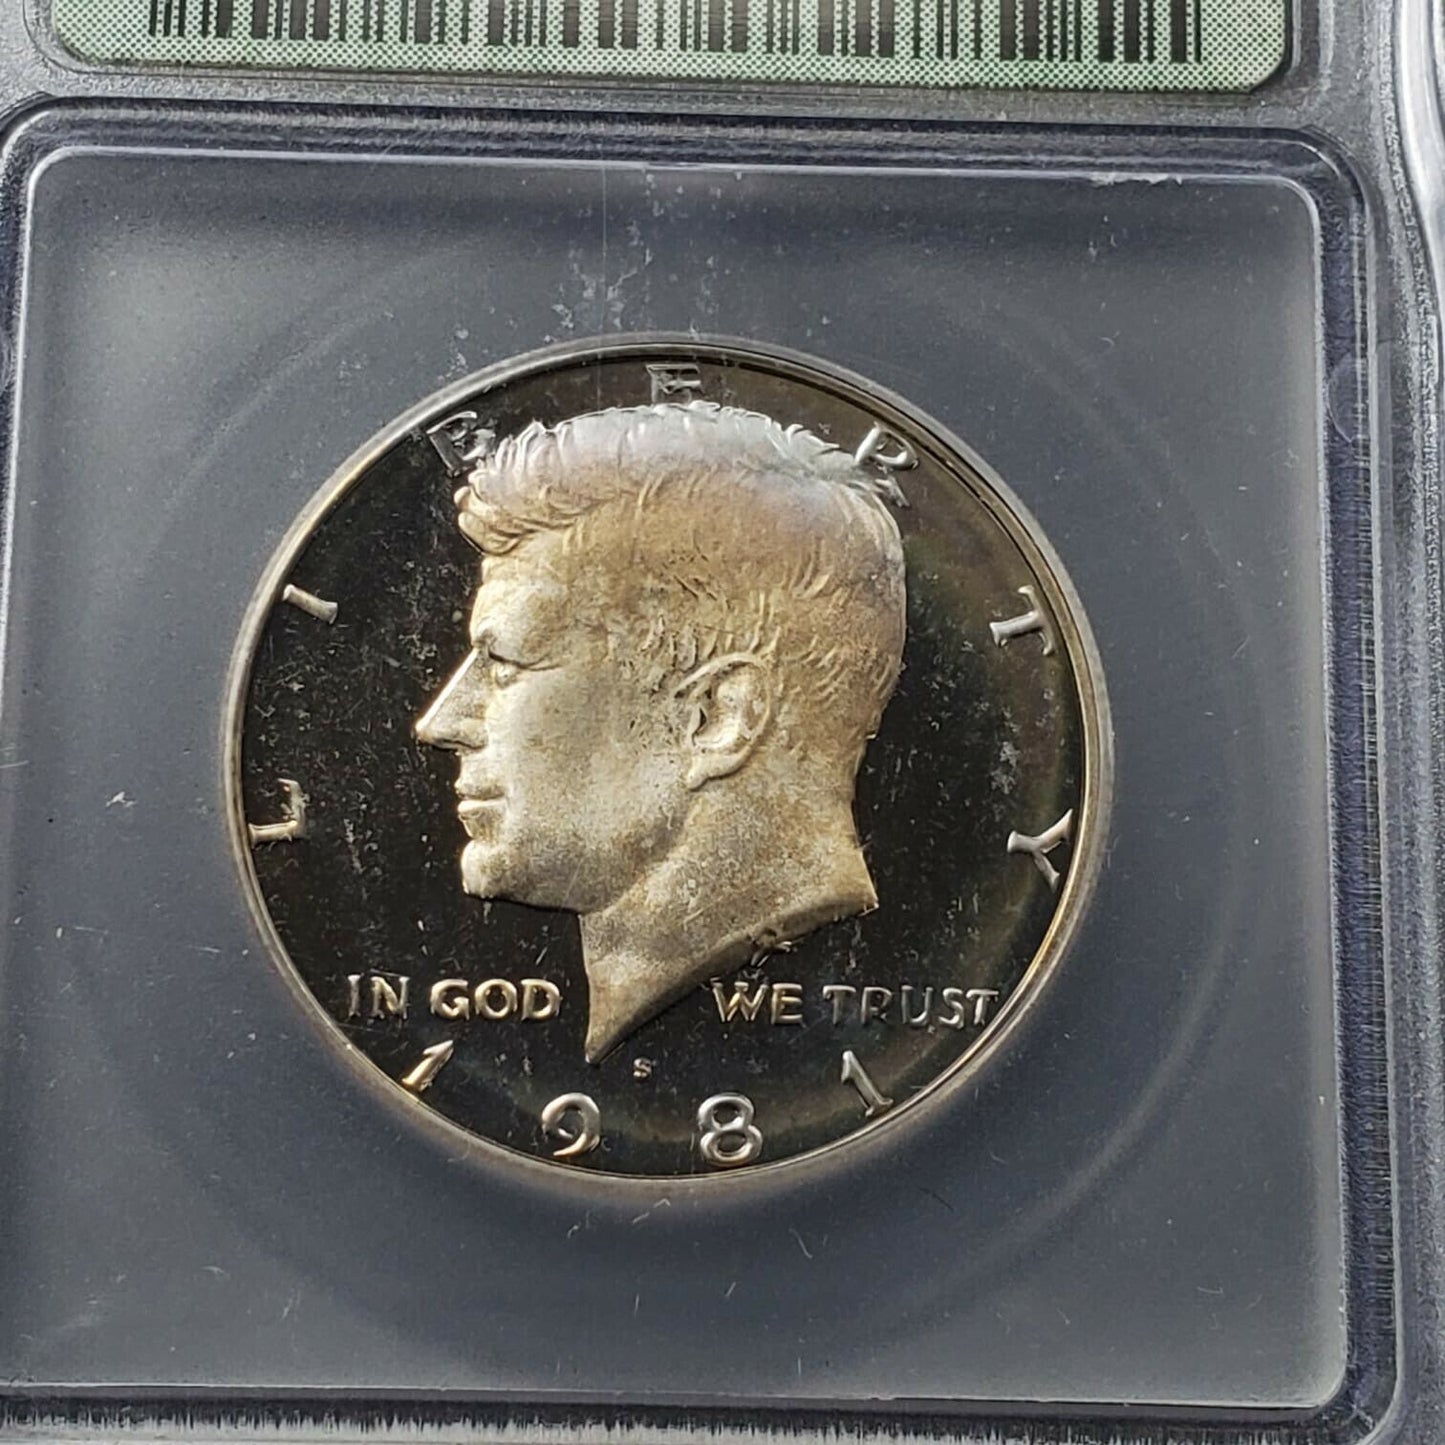 1981 S Type 1 Proof Kennedy Half Dollar Coin RETRO ICG PR70 DCAM Deep Cameo Gem